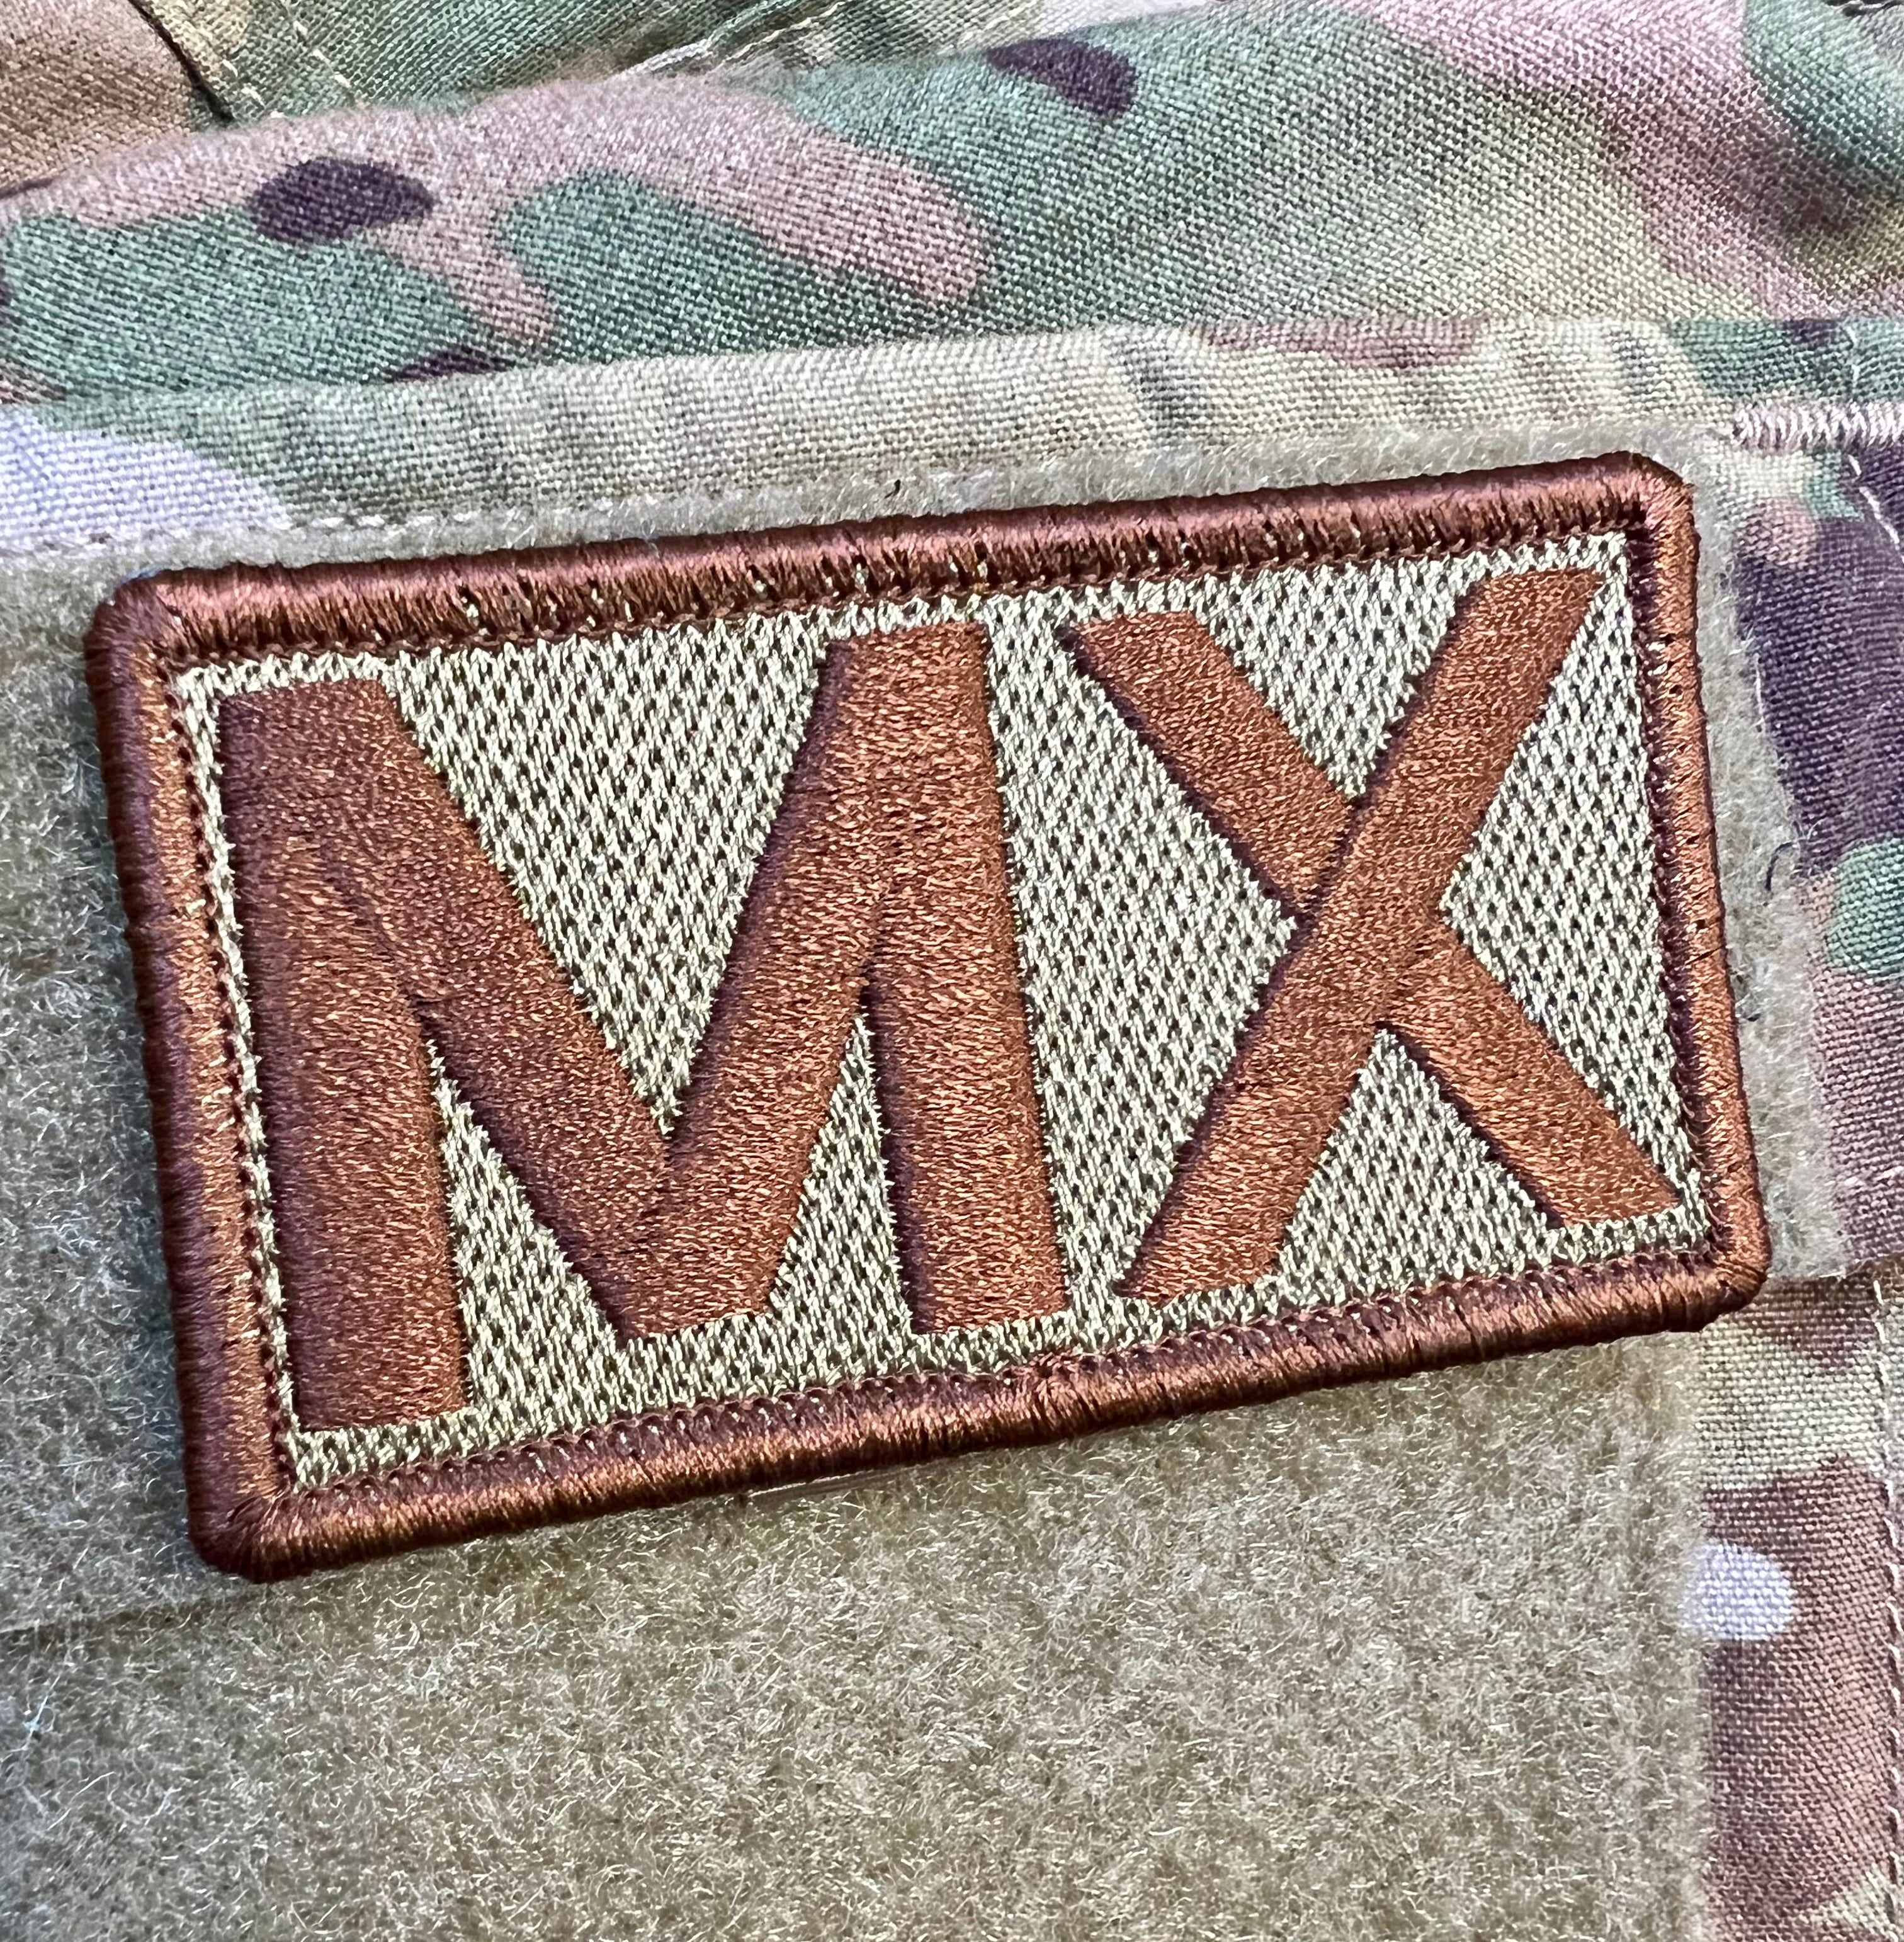 MX- Duty Identifier Patch